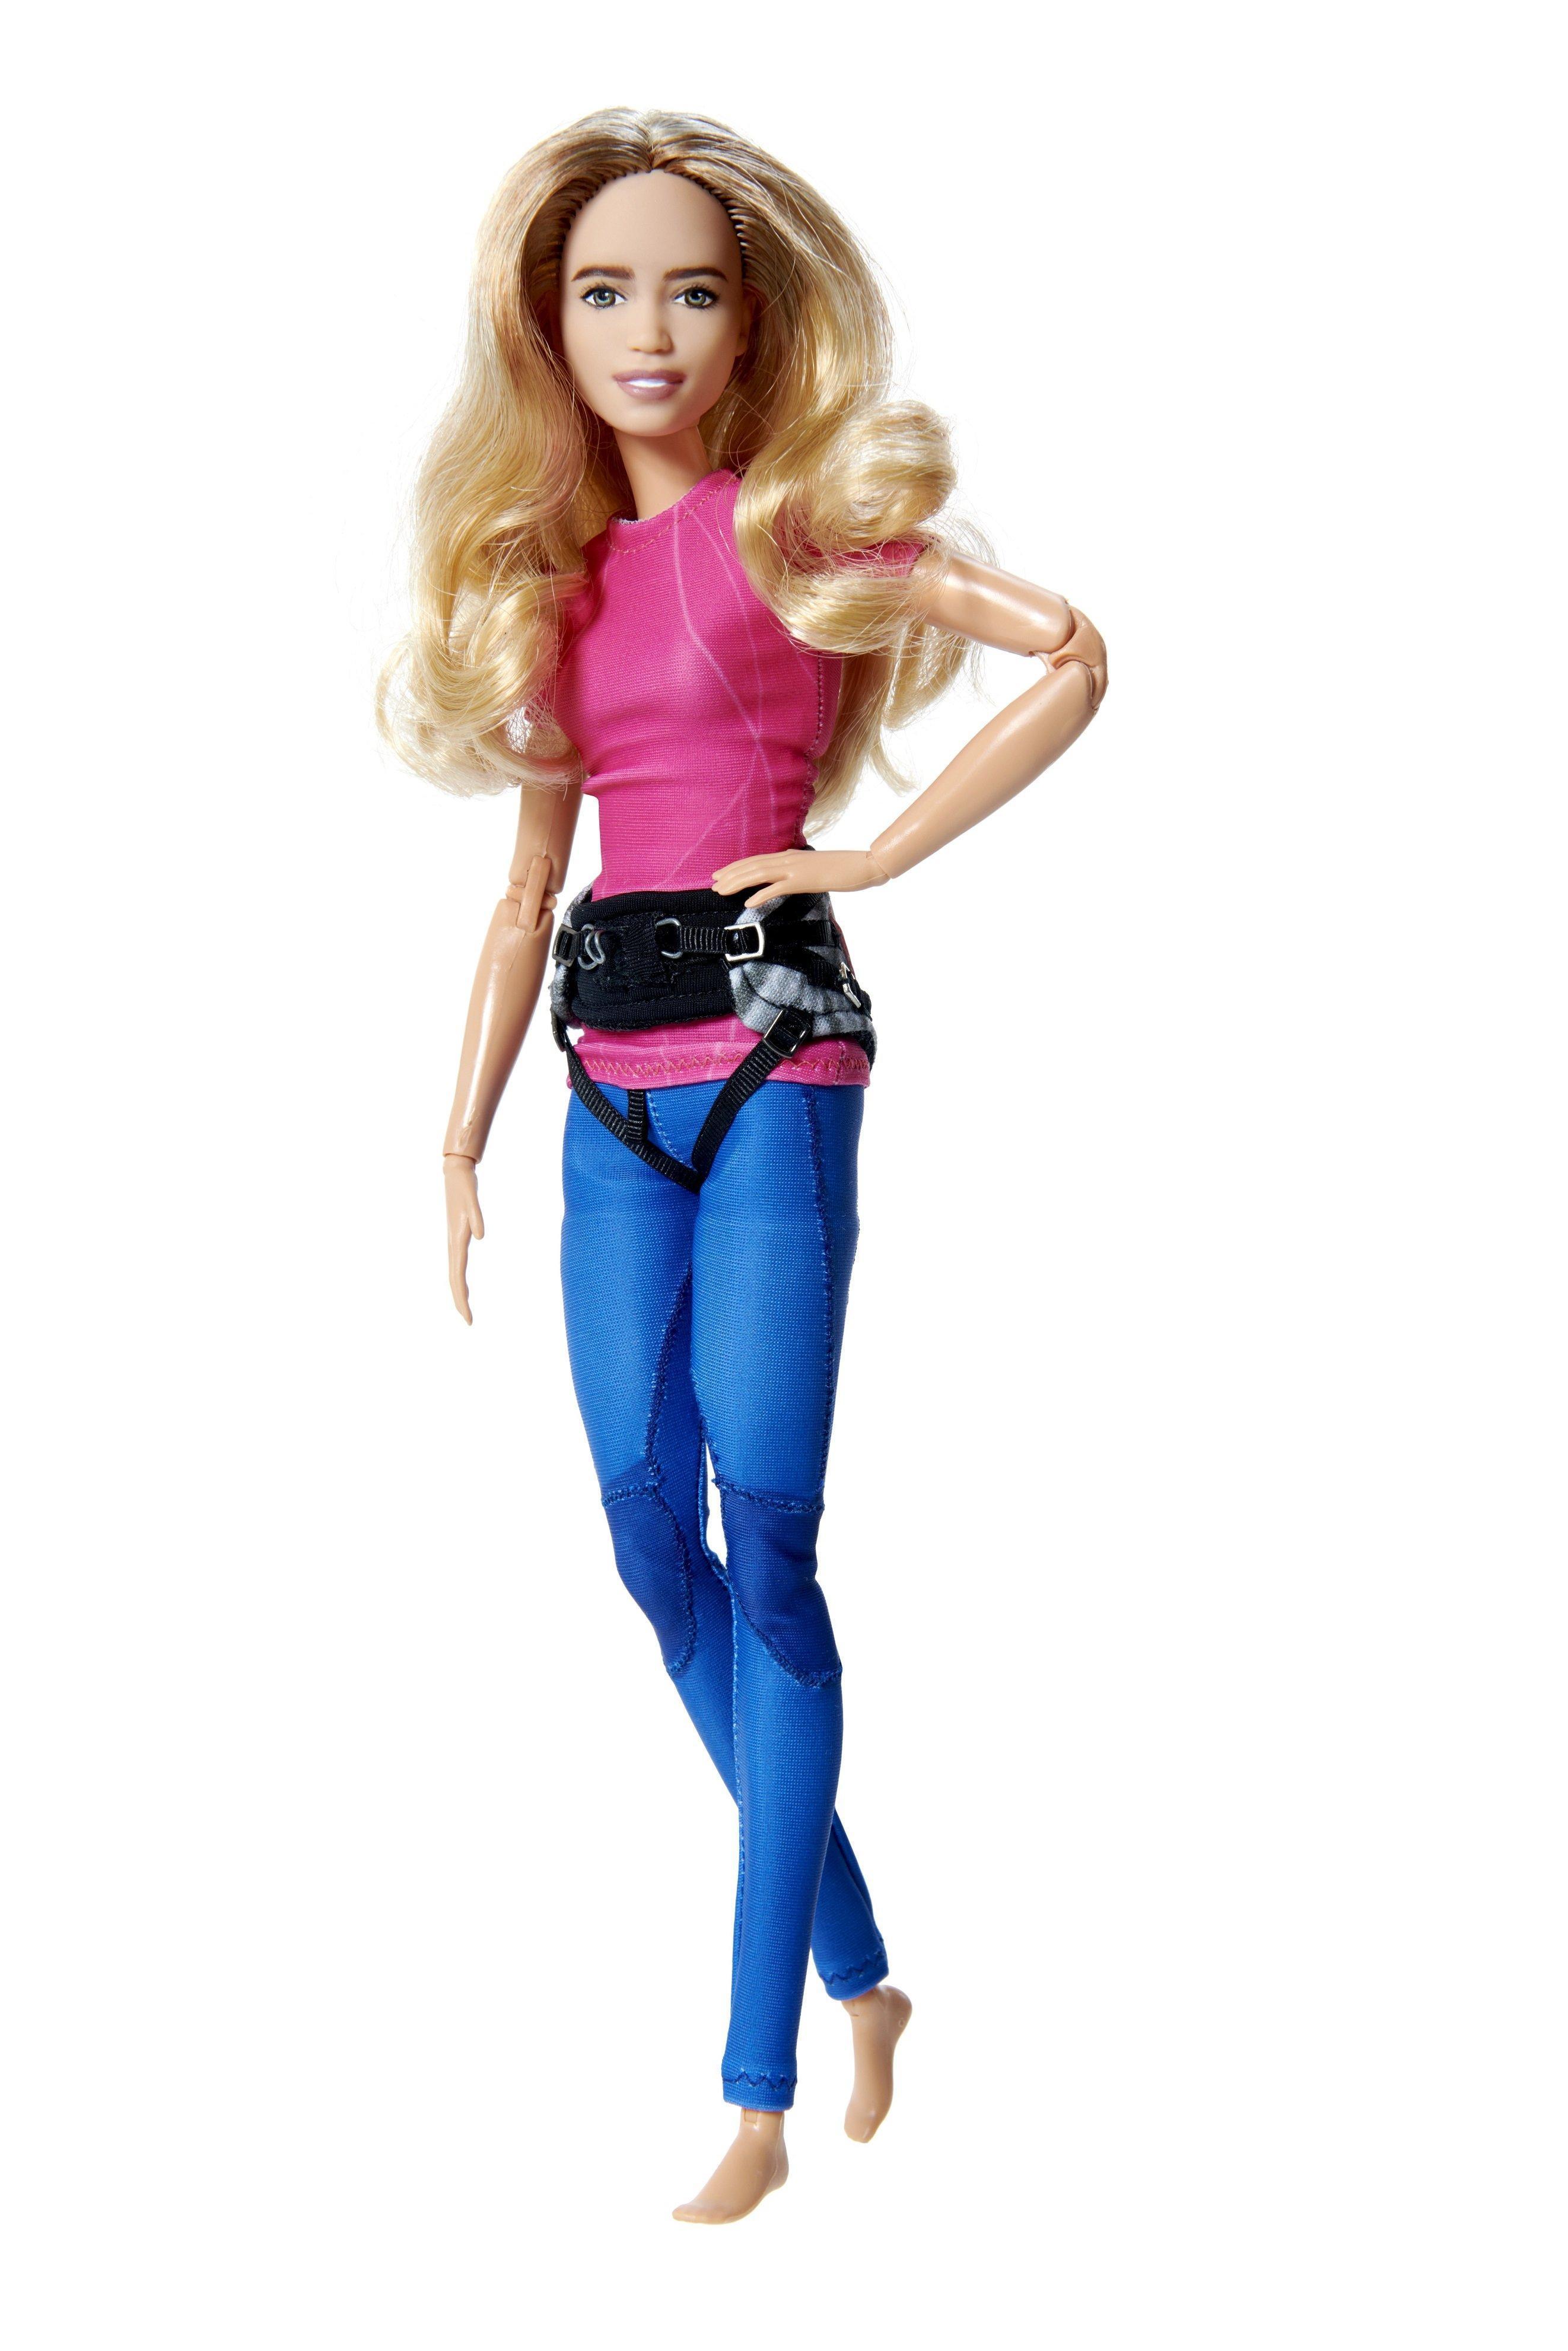 Çağla Kubat, Şampiyon Rüzgar Sörfçüsü olarak artık bir Barbie